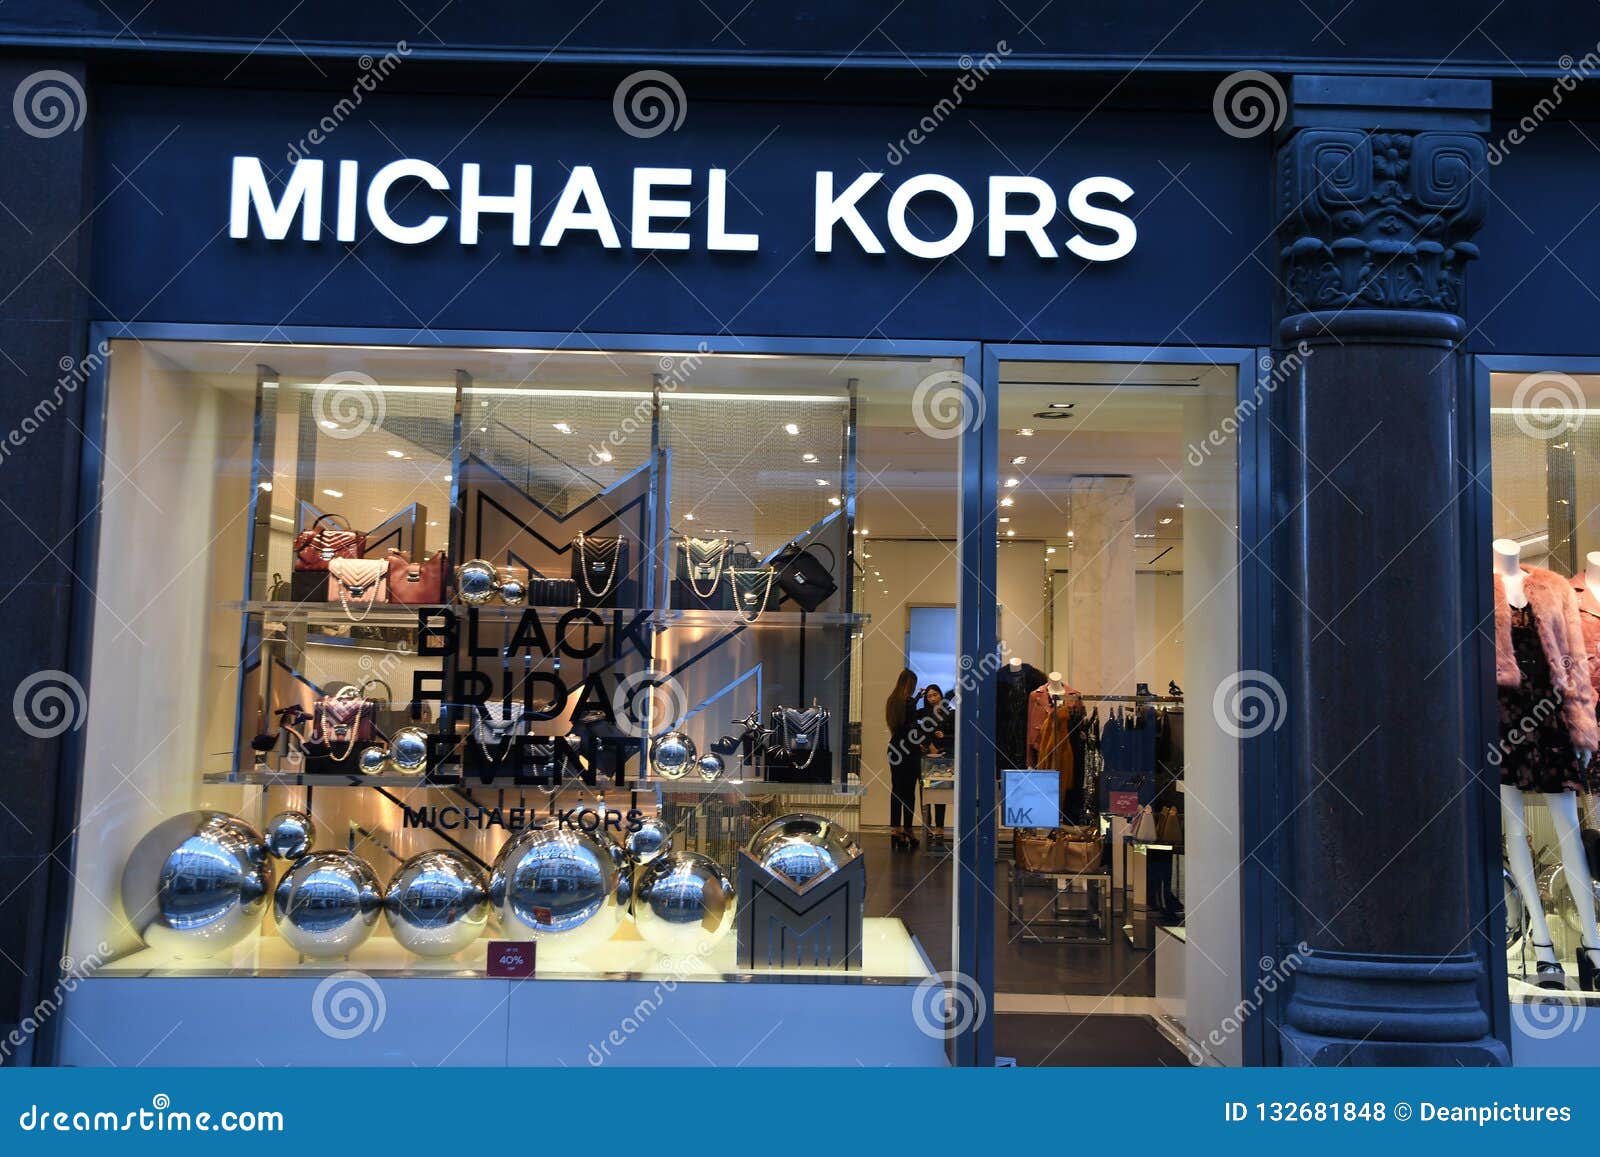 BLACK FIDAY on MICHAEL KORS STORE in DENMARK Editorial Stock Photo - Image  of finanse, denmark: 132681848